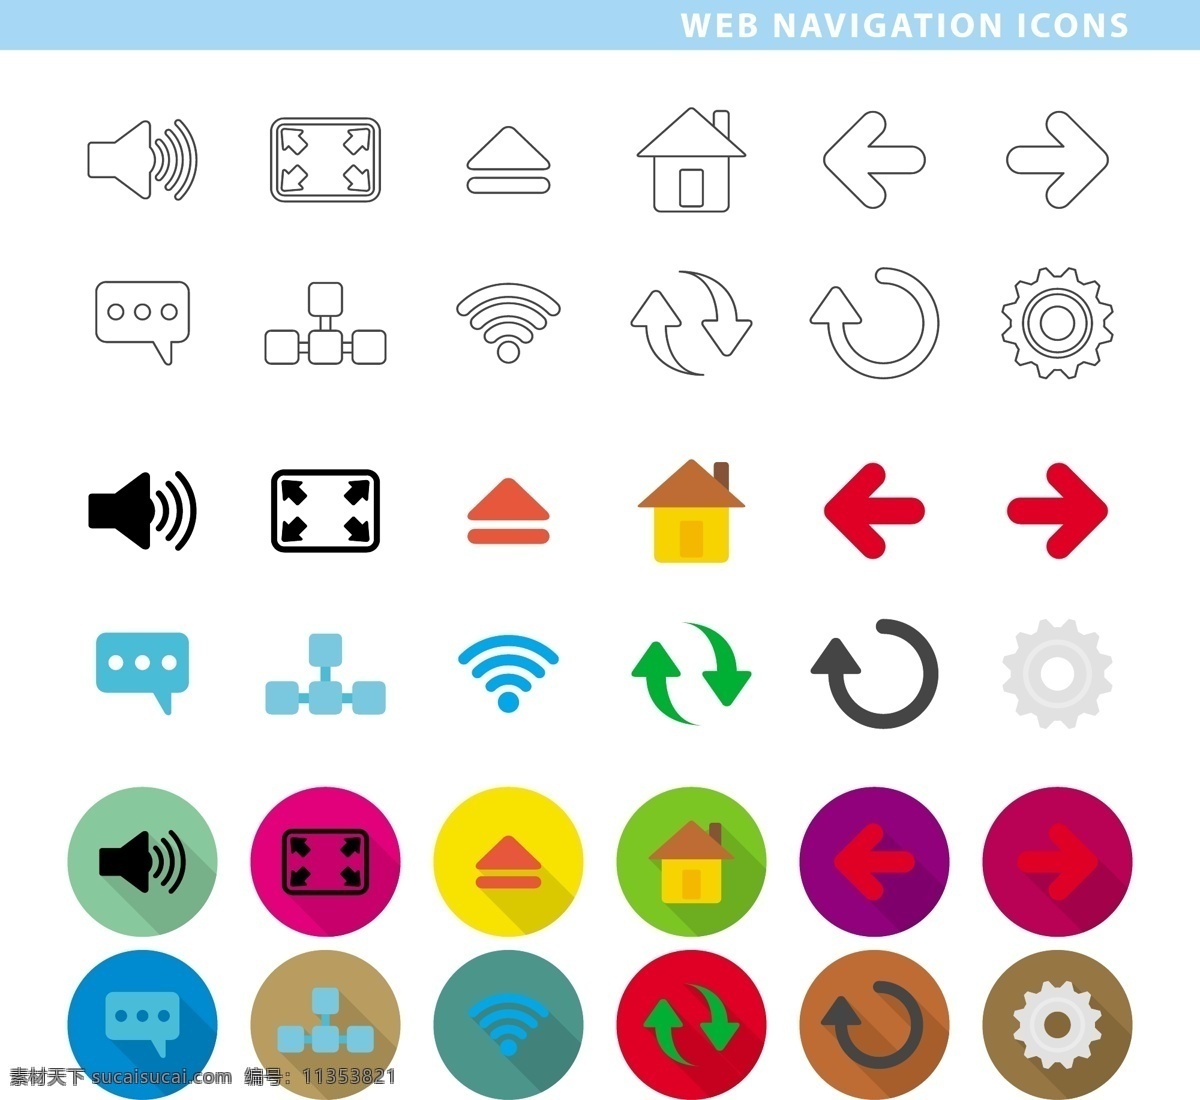 网络 传播 系列 扁平化 可爱 icon 矢量 声音 箭头 矢量素材 设计素材 背景素材